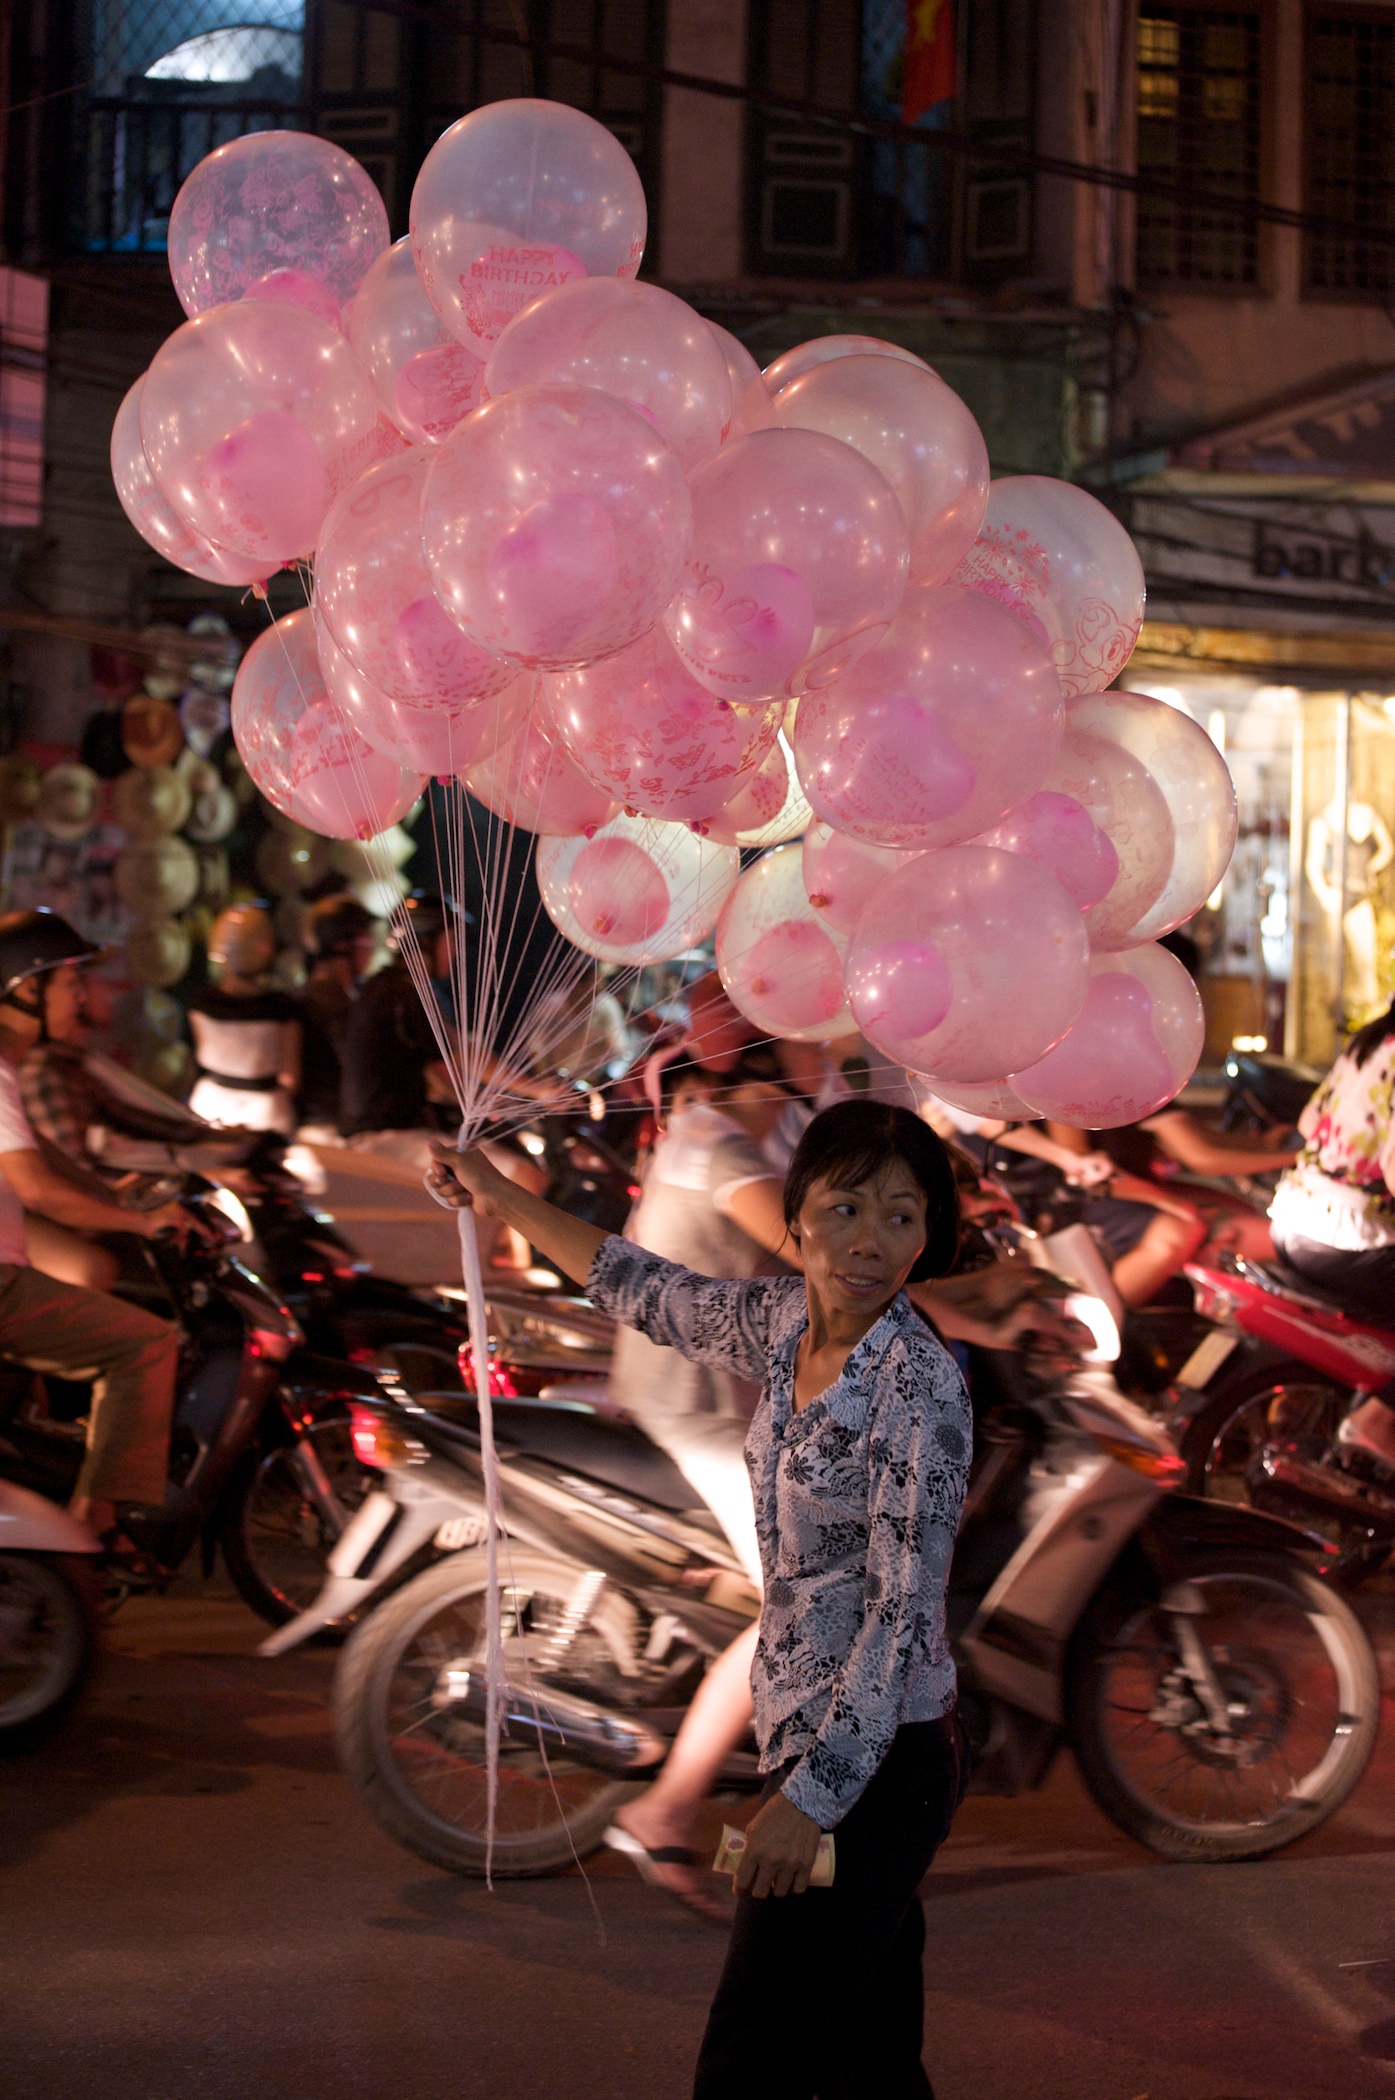 Hanoi's 999th birthday — the balloon seller